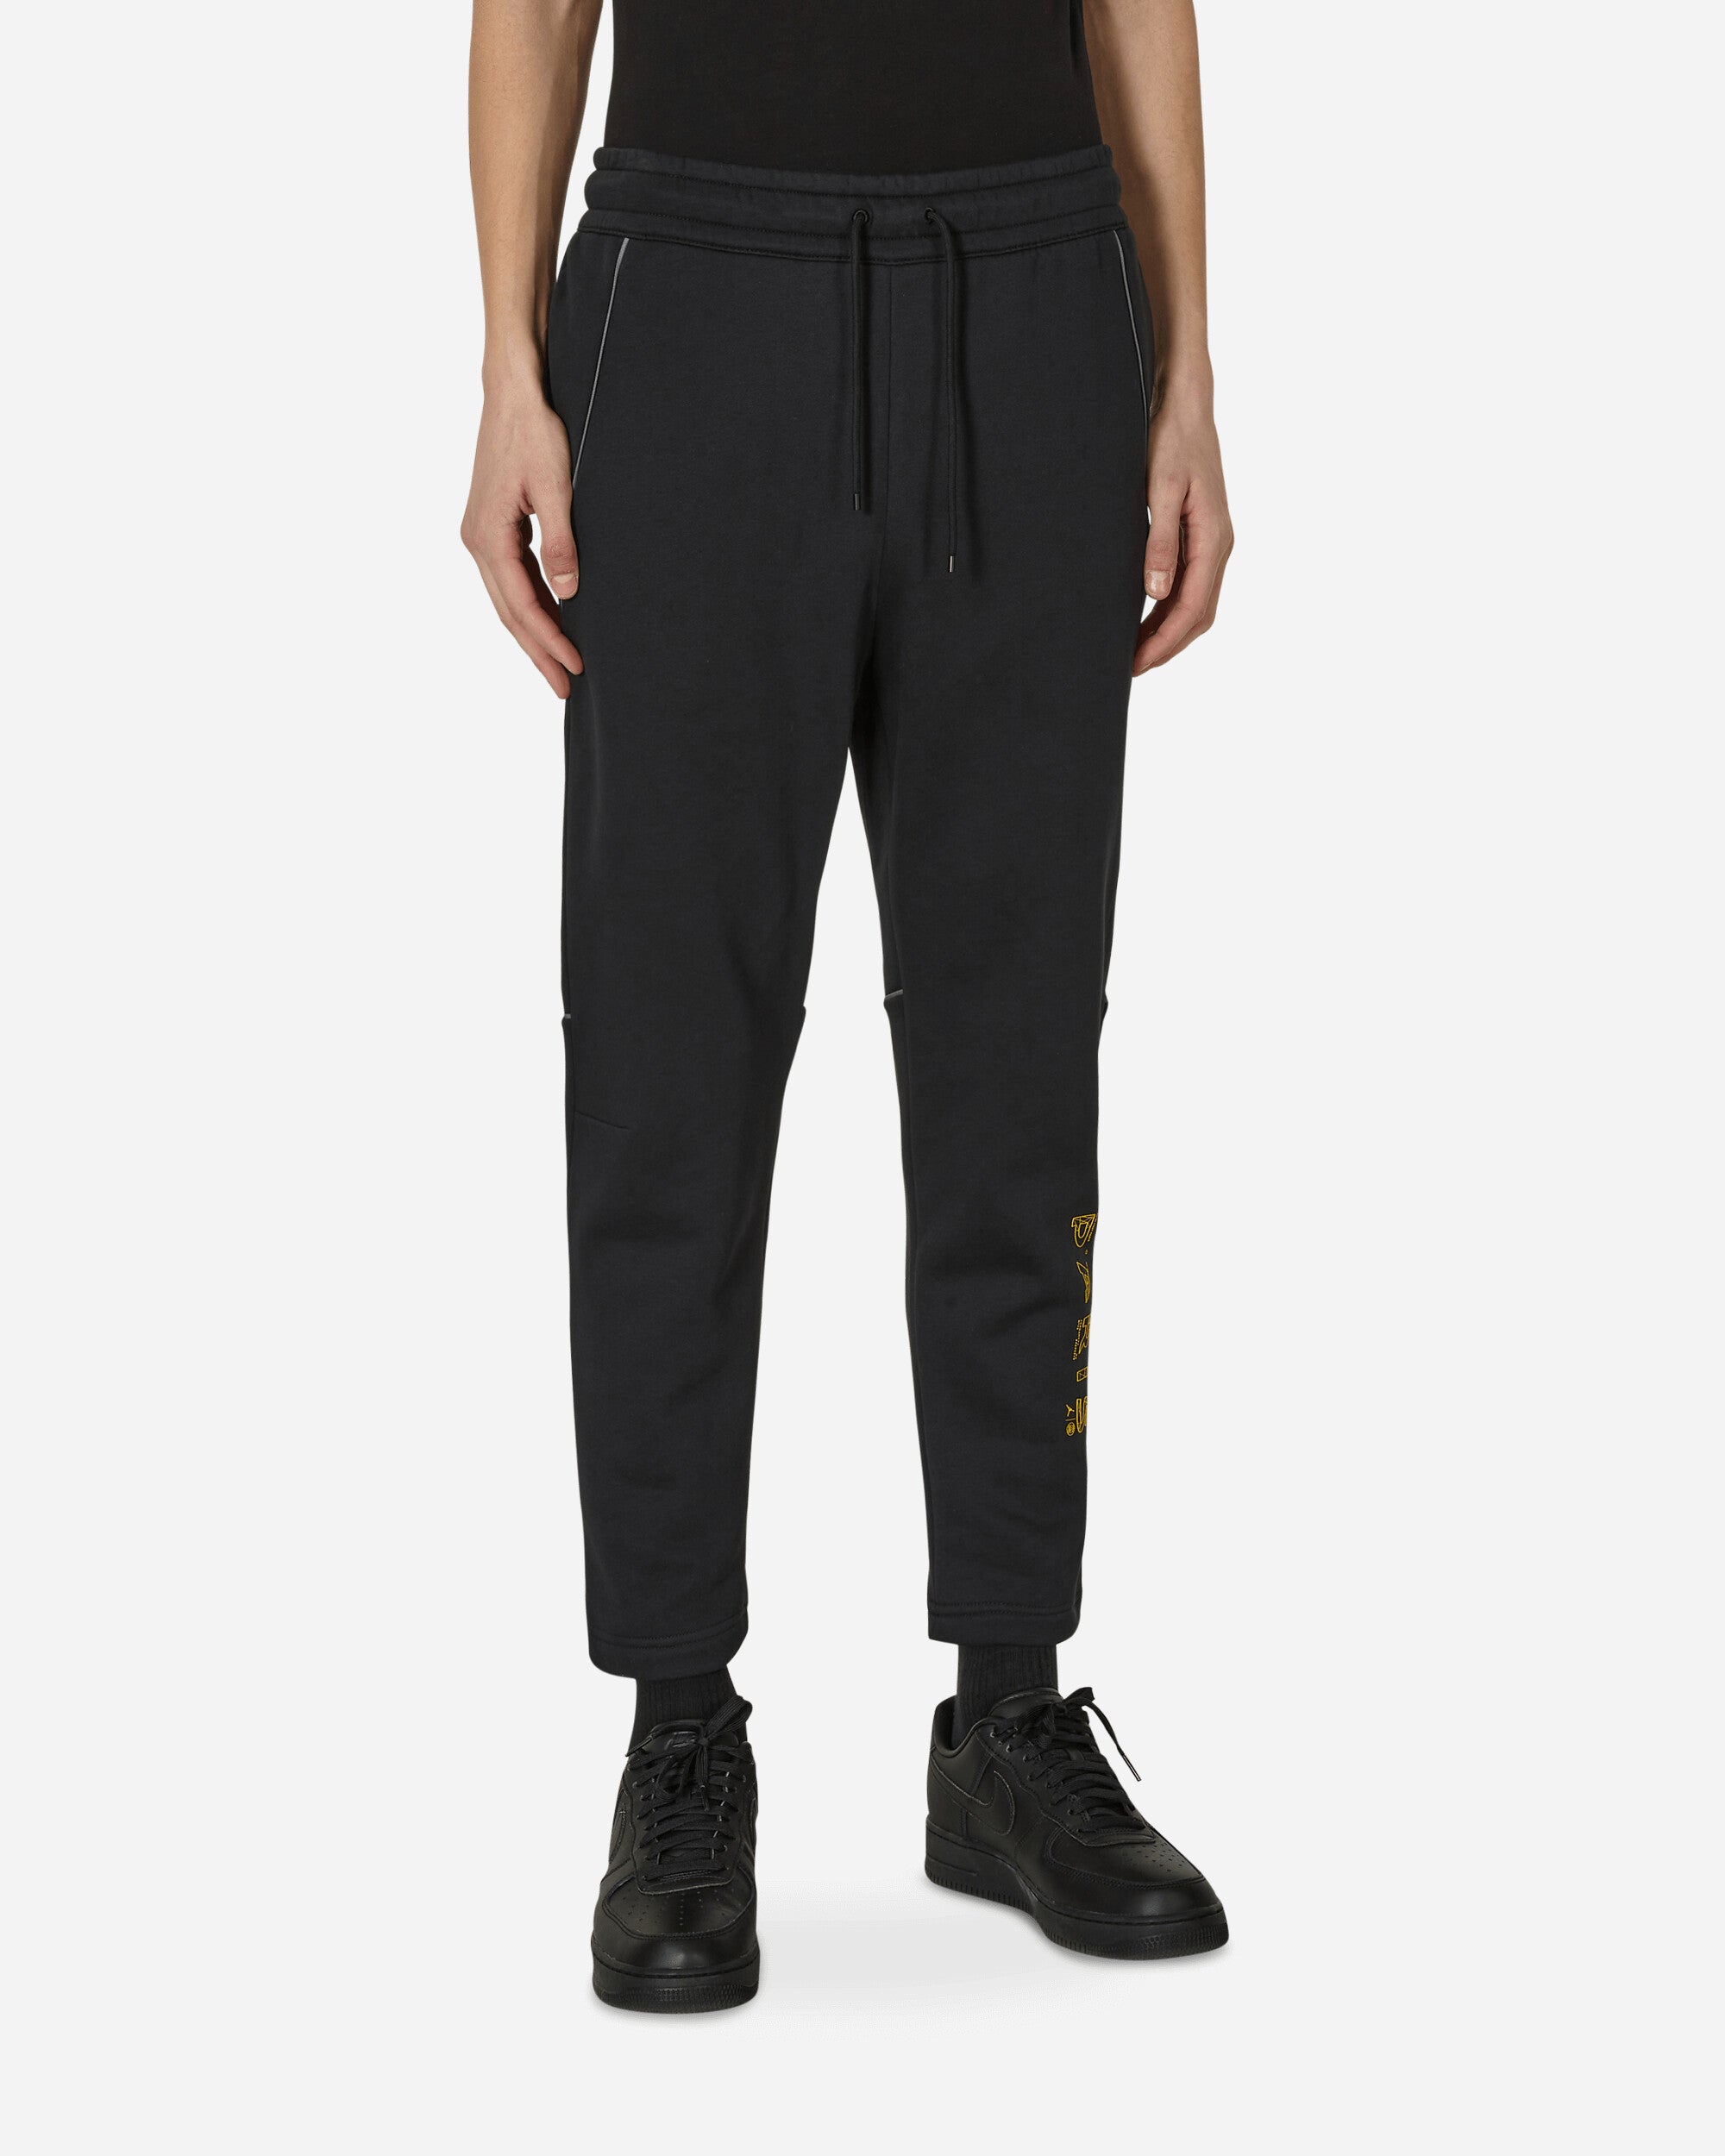 Nike Jordan Psg Flc Pant Black/Tour Yellow Pants Trousers DV0621-010